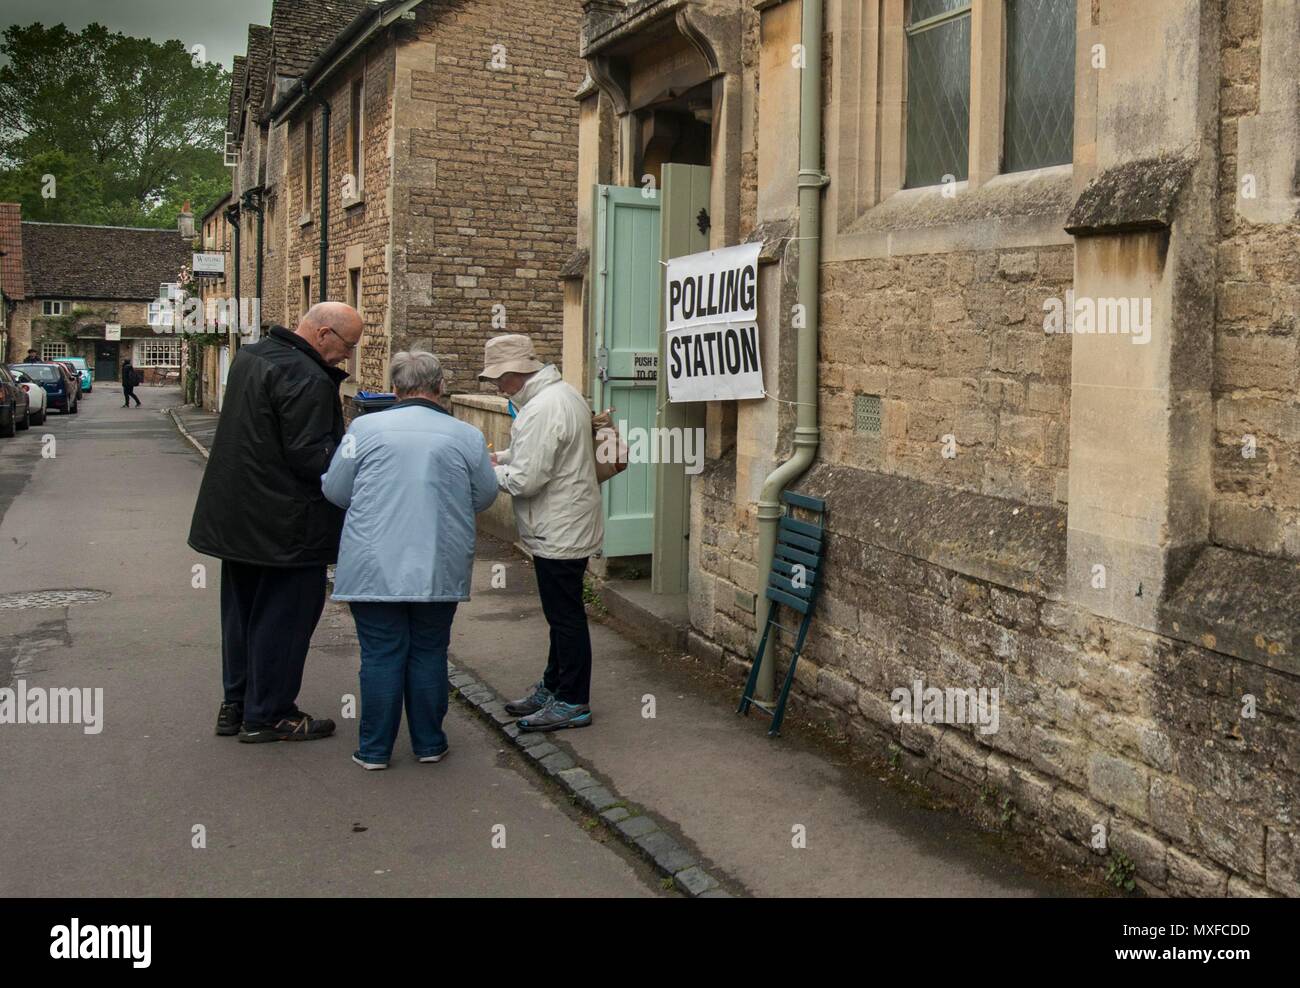 Les gens vont vers les pôles dans l'élection générale 2017 photographié un caissier conservateur se trouve à l'extérieur du bureau de vote au Village de Lacock Hall Banque D'Images